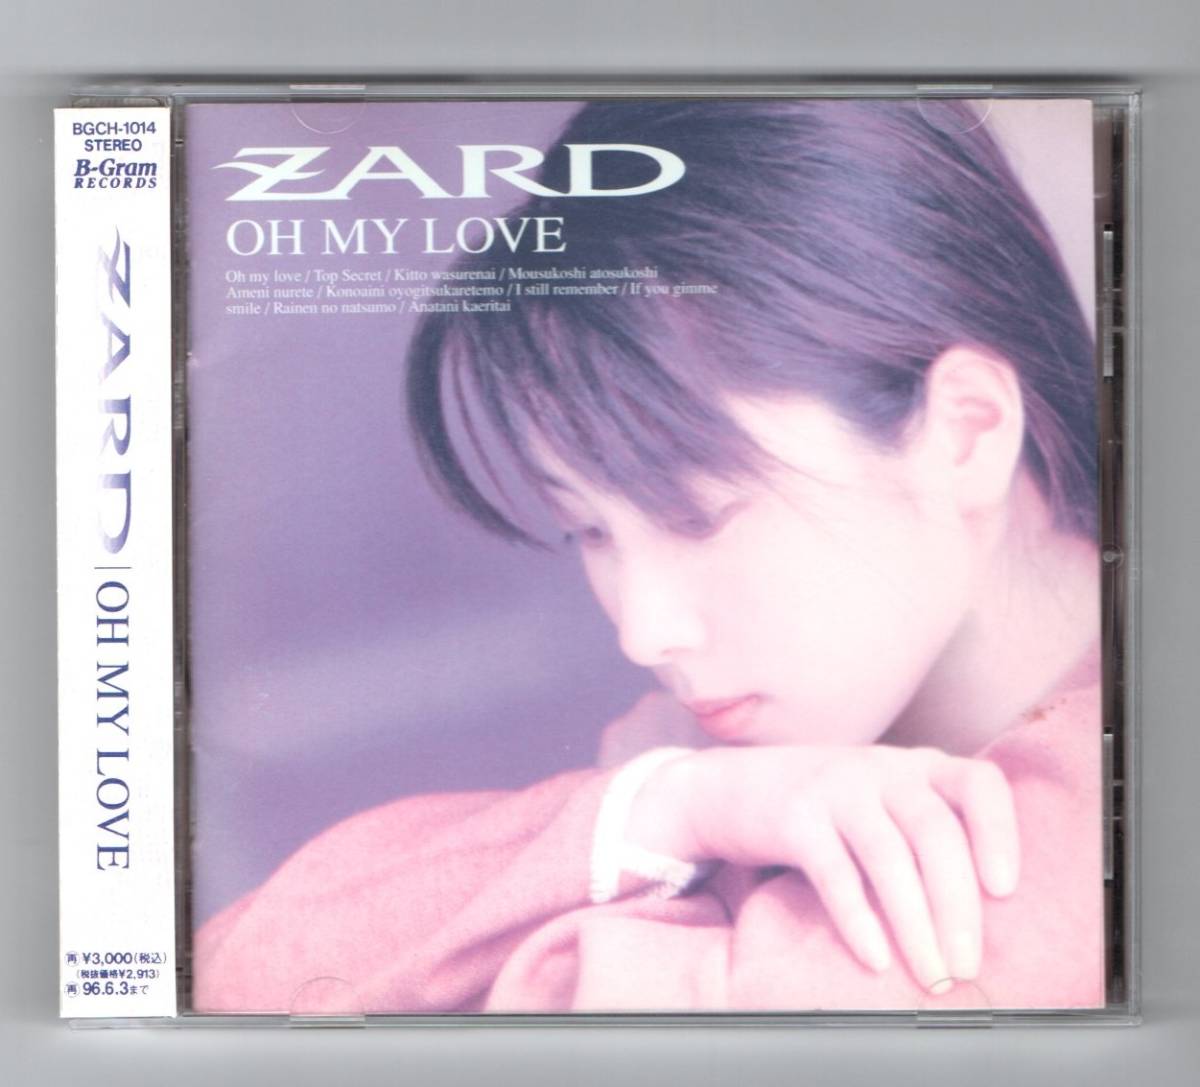 Ω 美品 ザード ZARD 1994年 5thアルバム 帯付 CD/オーマイラヴ OH MY LOVE/きっと忘れない 雨に濡れて 来年の夏も 他全10曲収録/坂井泉水_※プラケースは交換済みです。